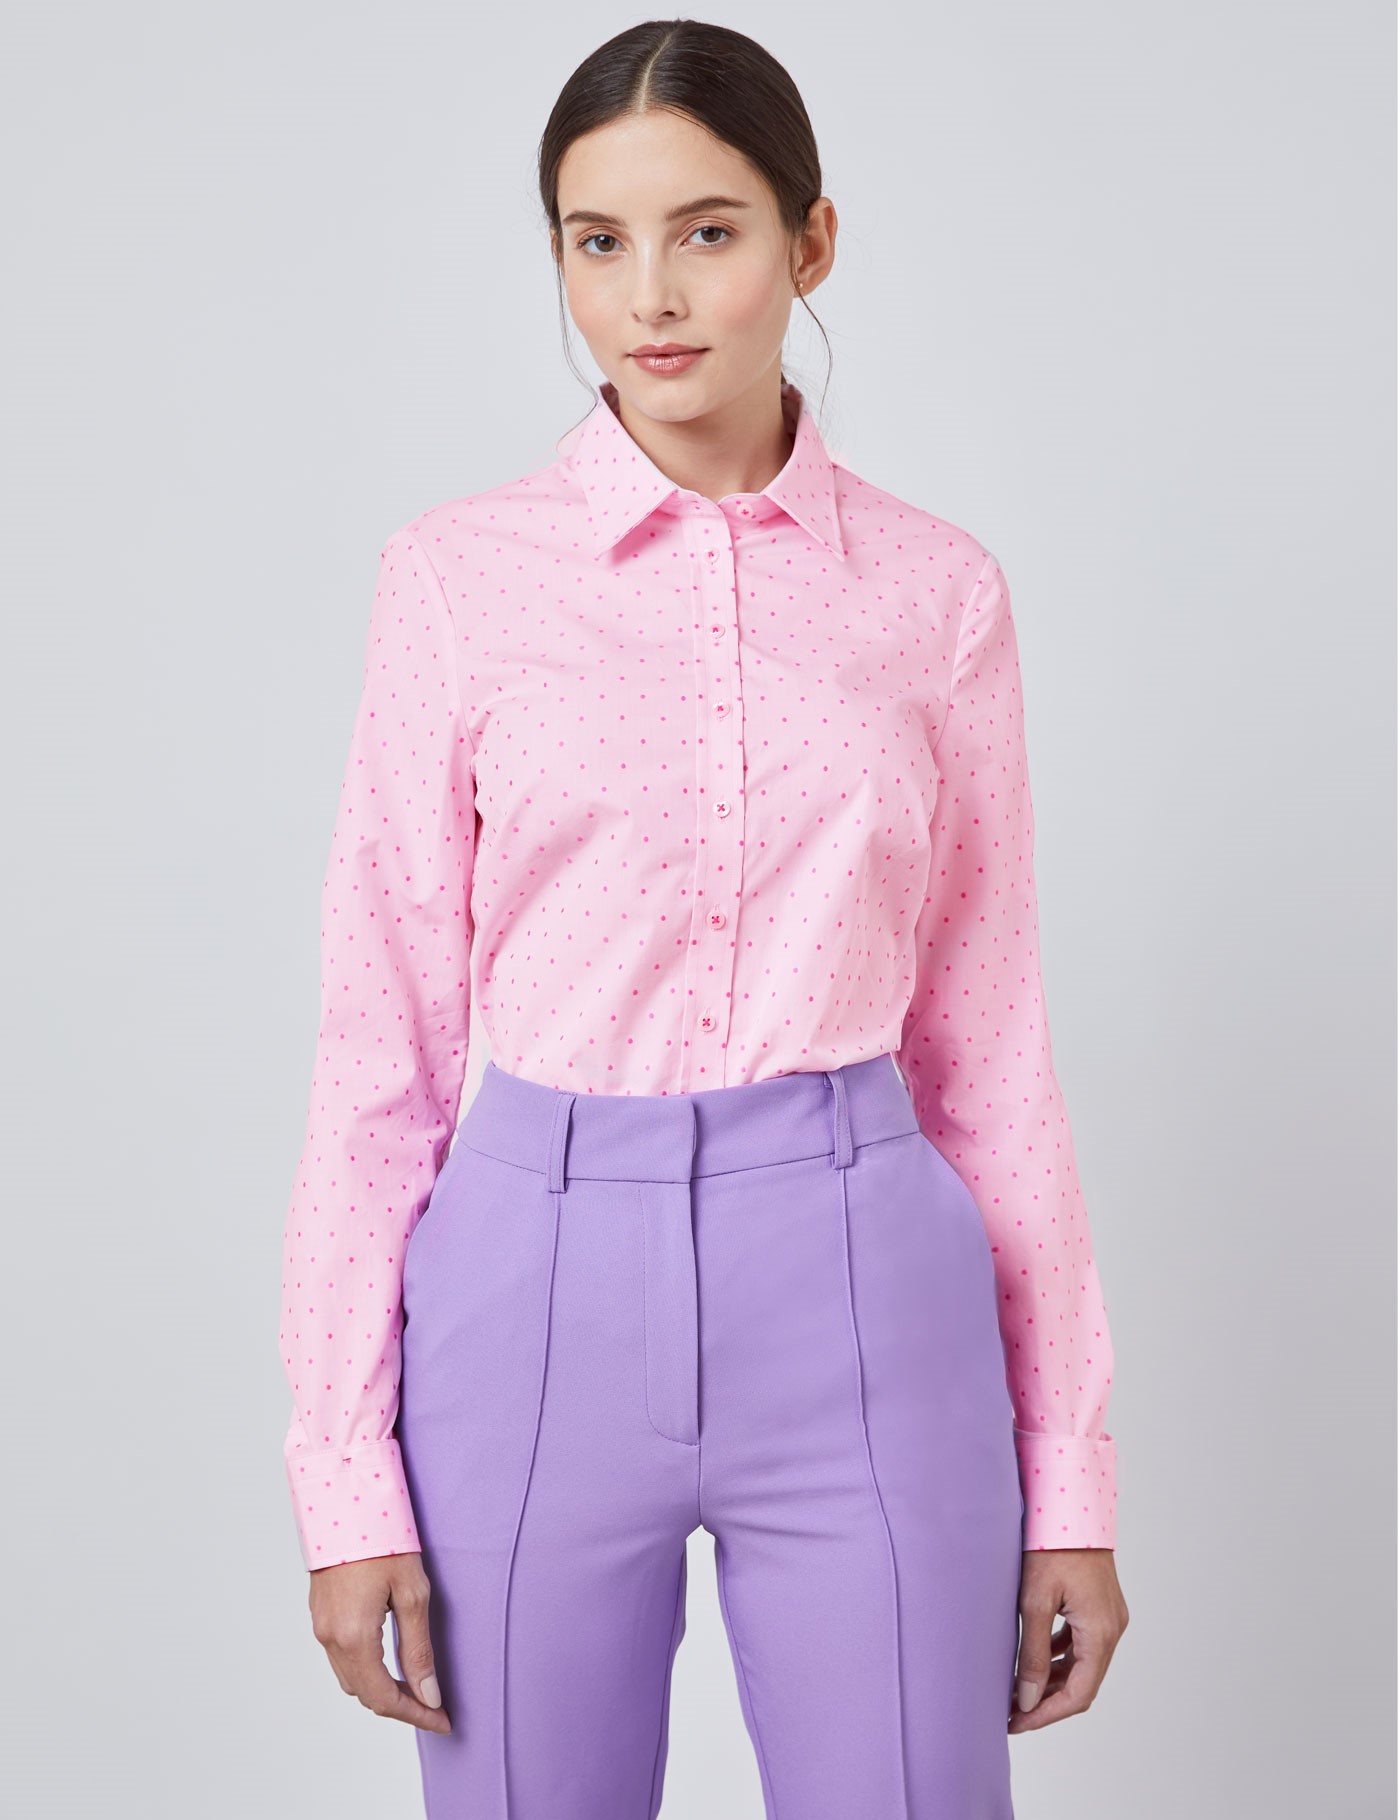 Women's Light Pink & Fuchsia Spot Semi Fitted Shirt - Single Cuff